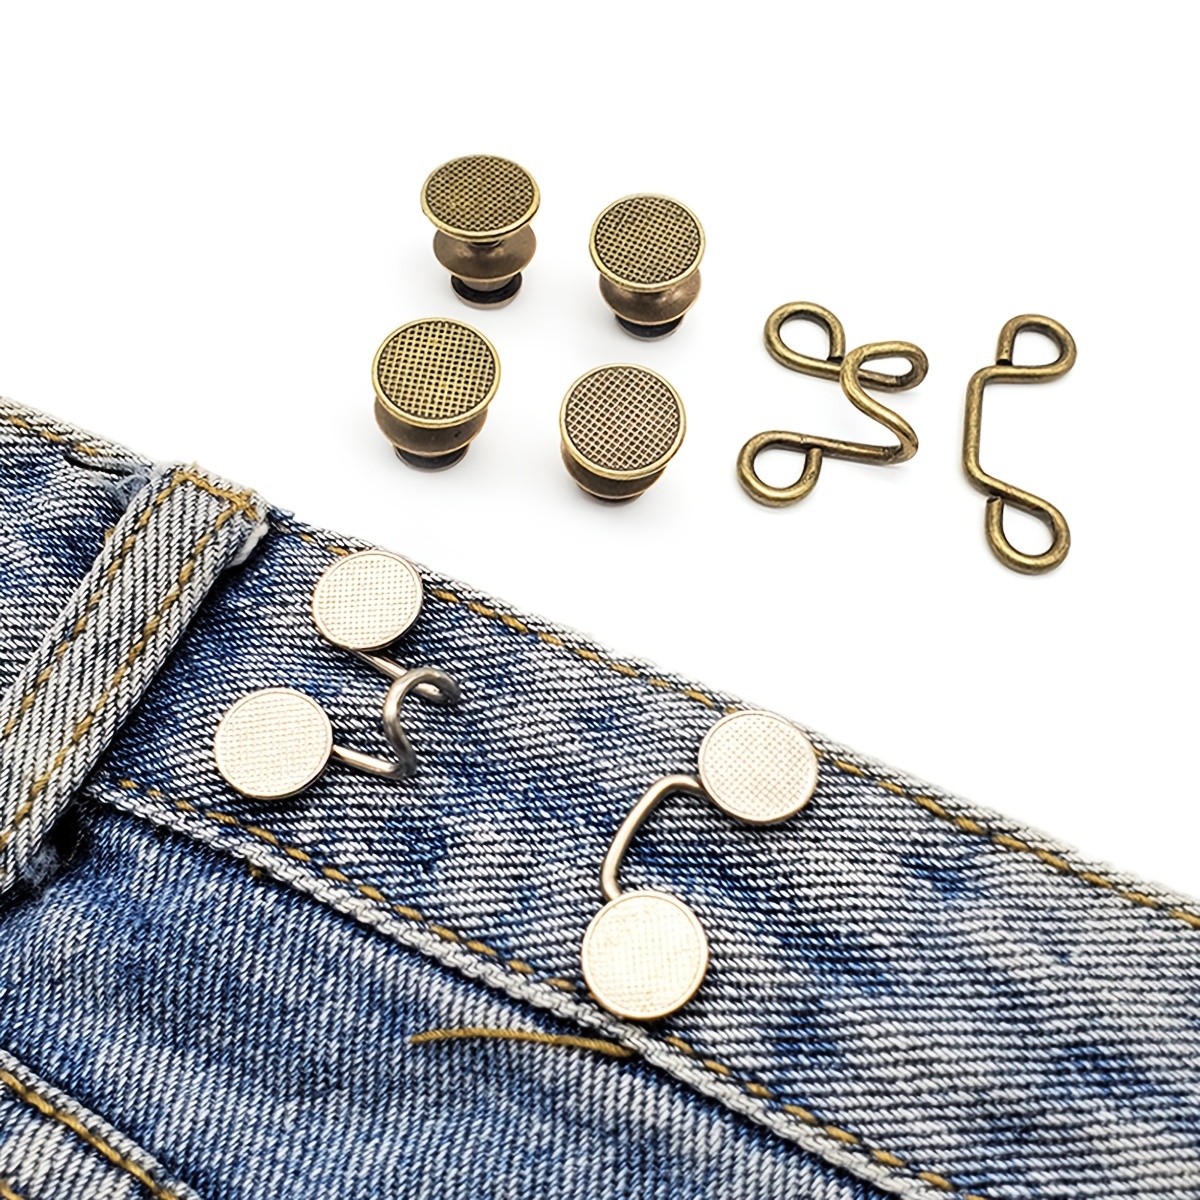 Adjustment Button Metal Tightening Waistband Pin Garment Jeans Waist